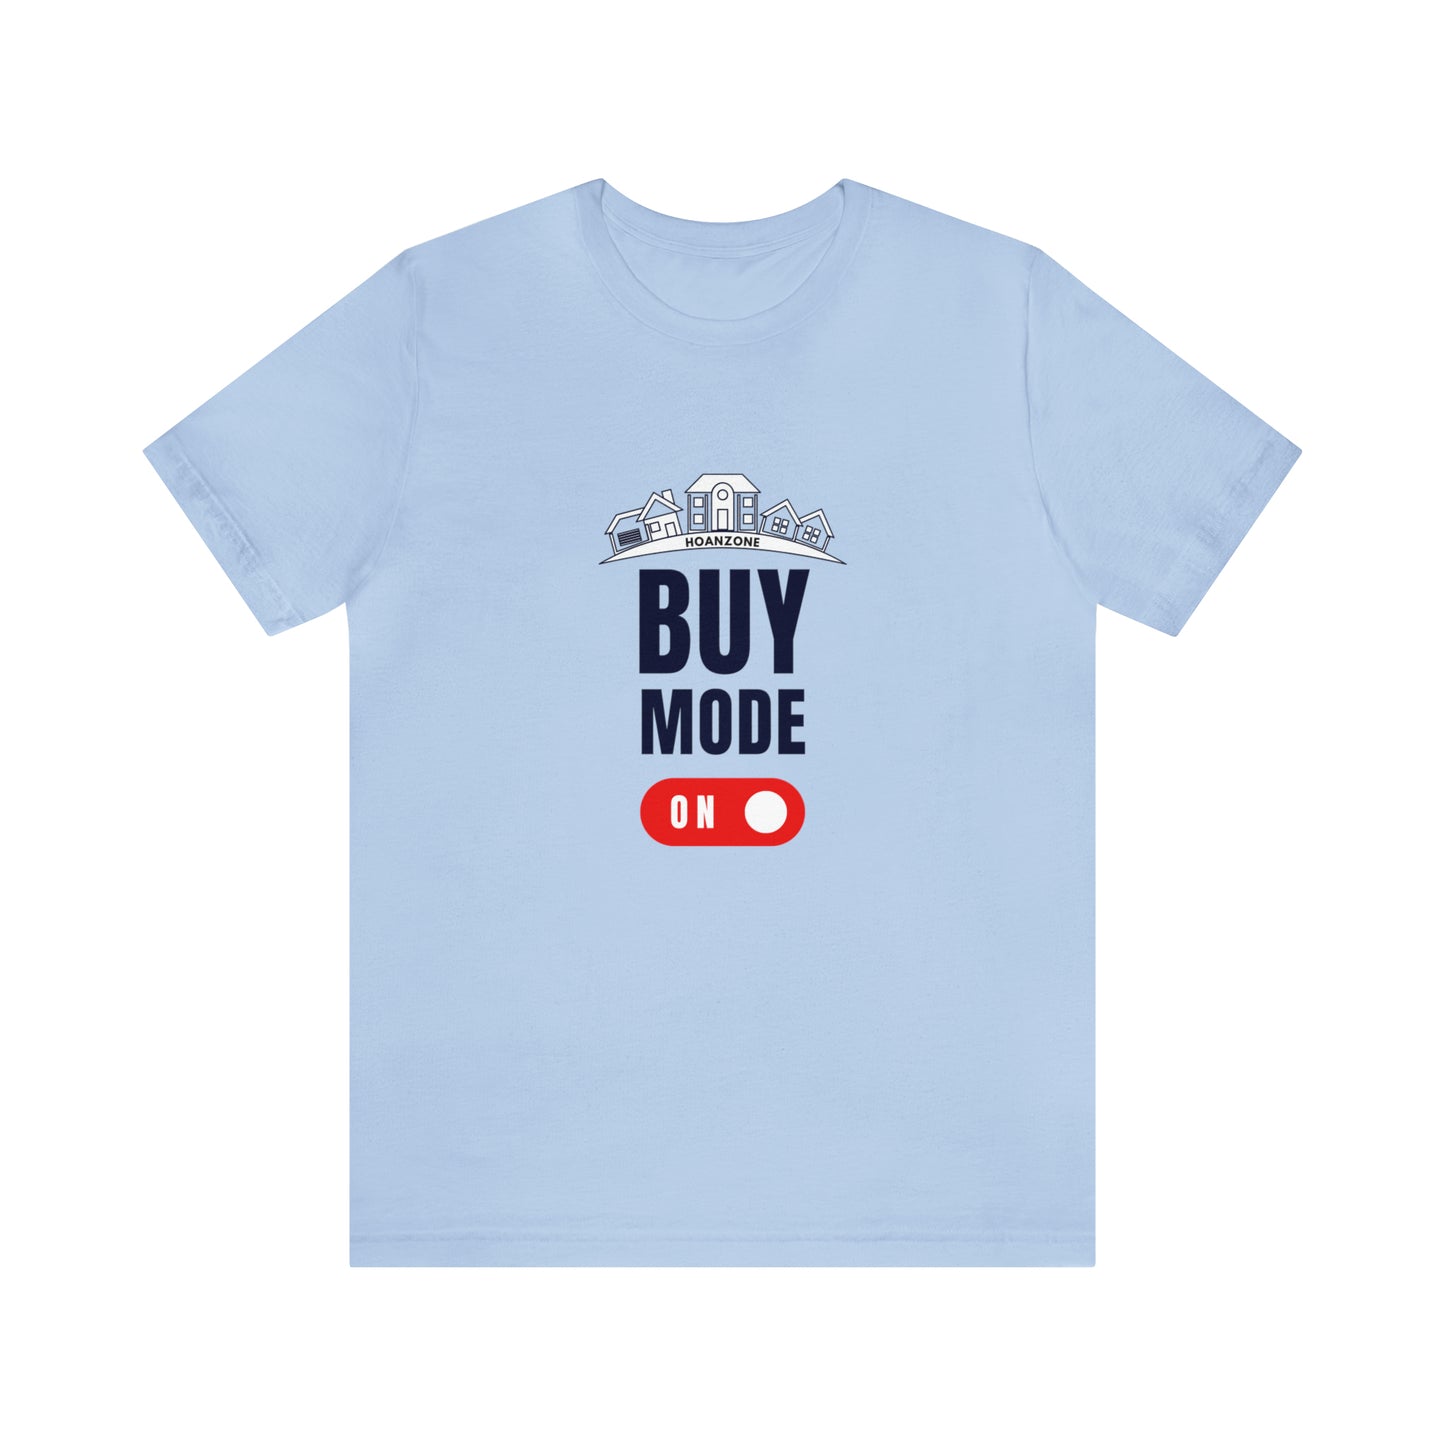 Buy Mode... ON!